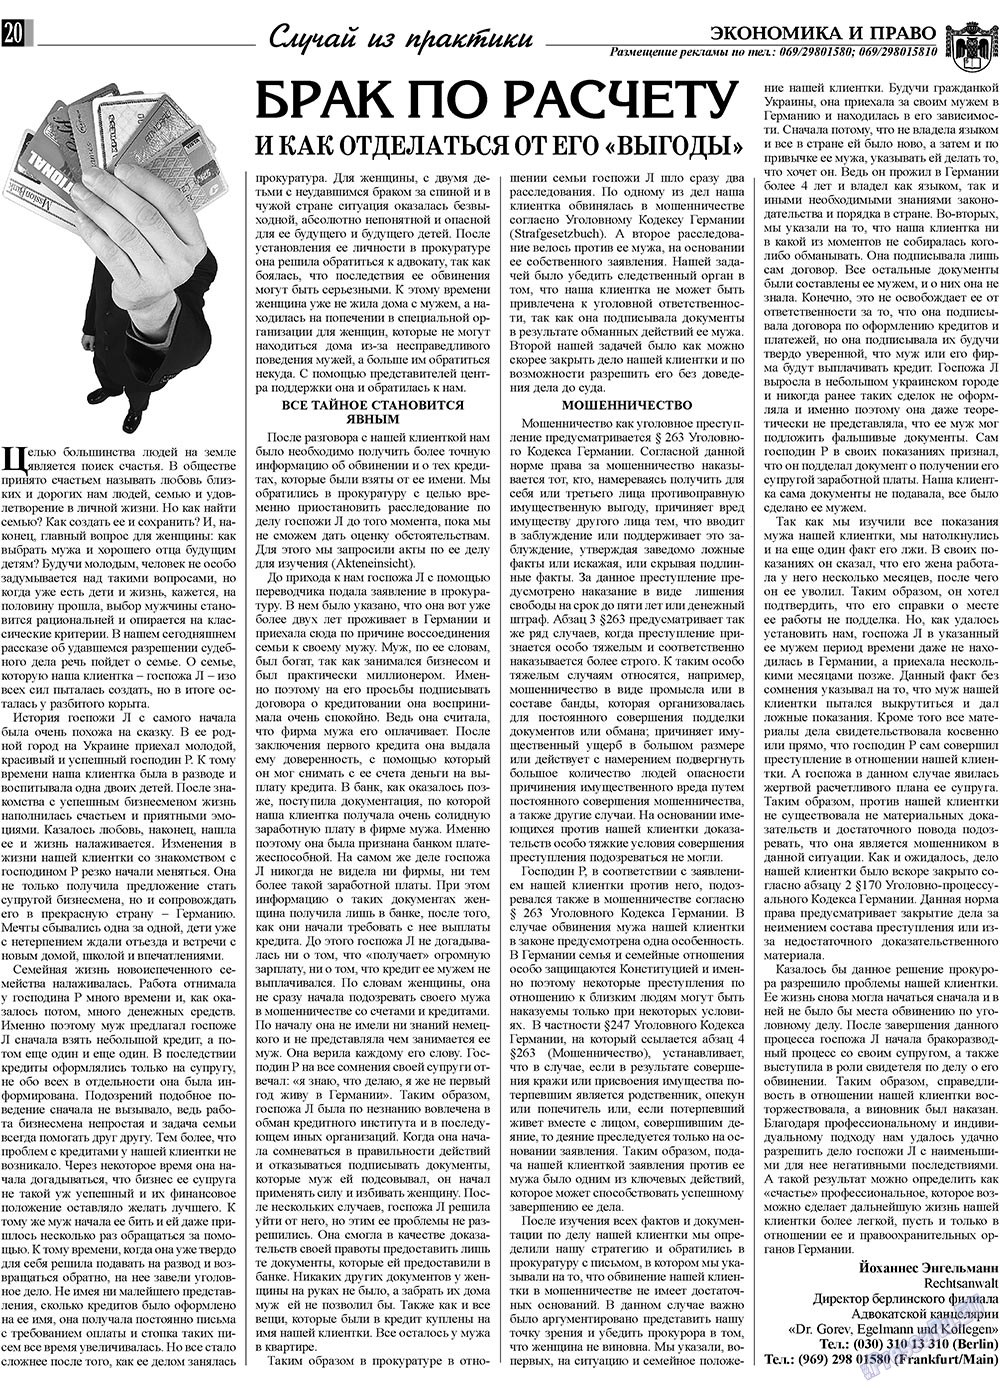 Экономика и право, газета. 2009 №3 стр.20